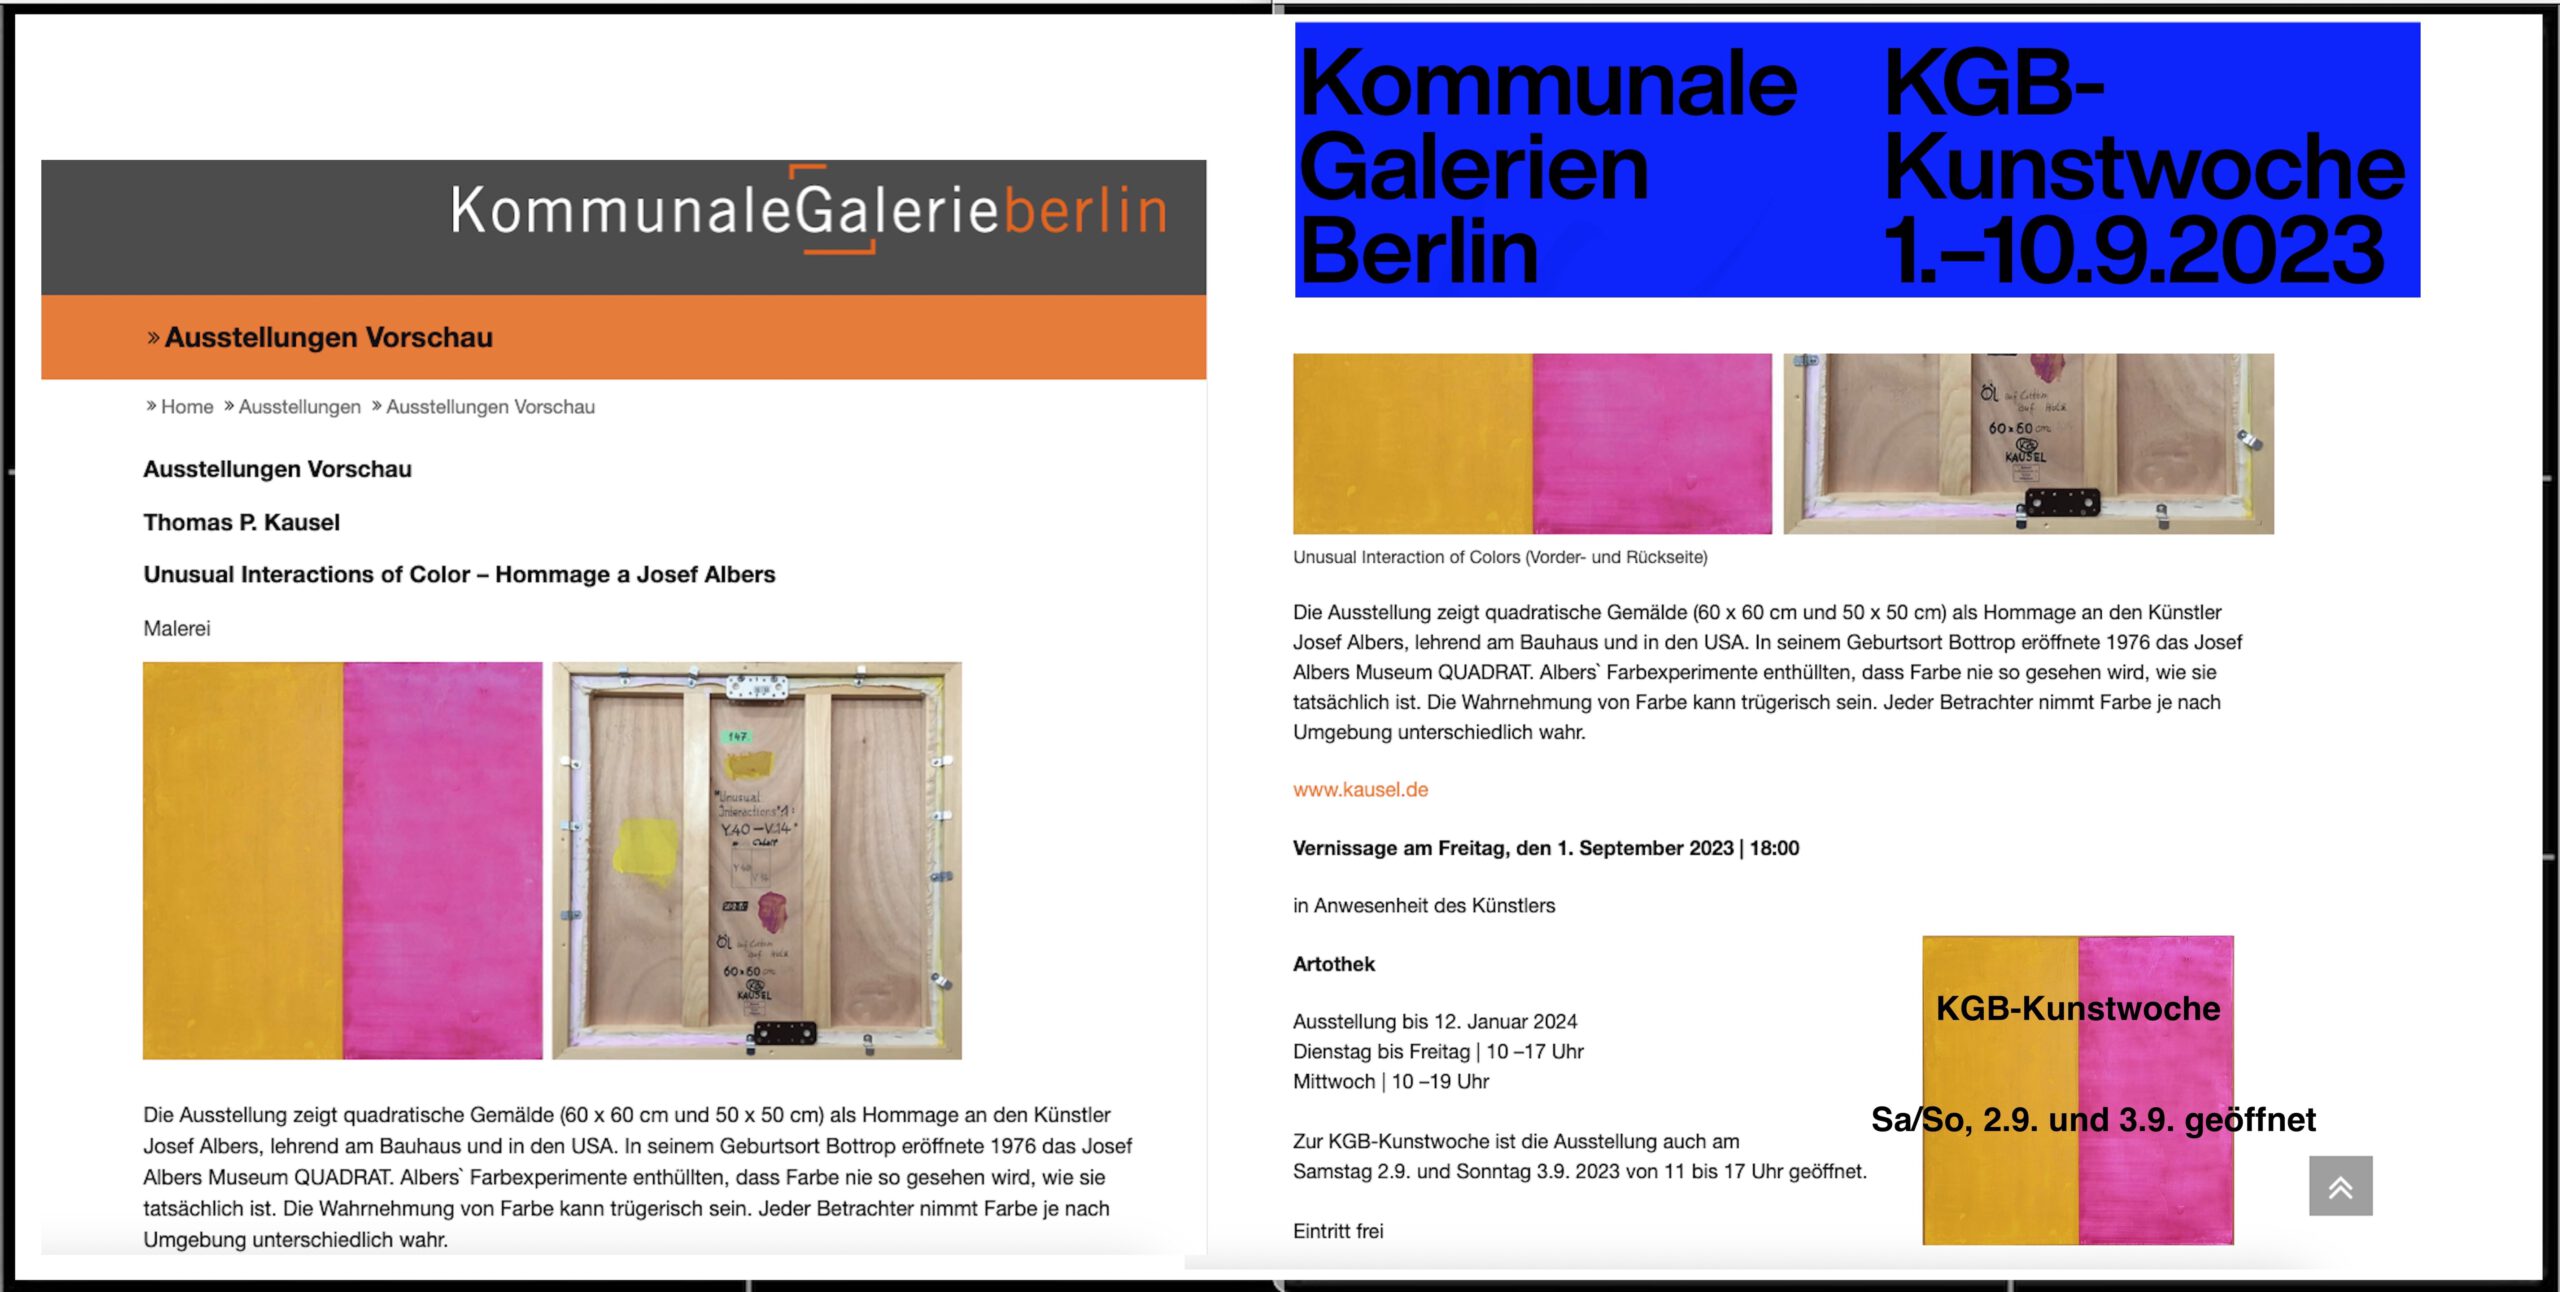 KGB-Kunstwoche 2023 kommunale Galerien Berlin 